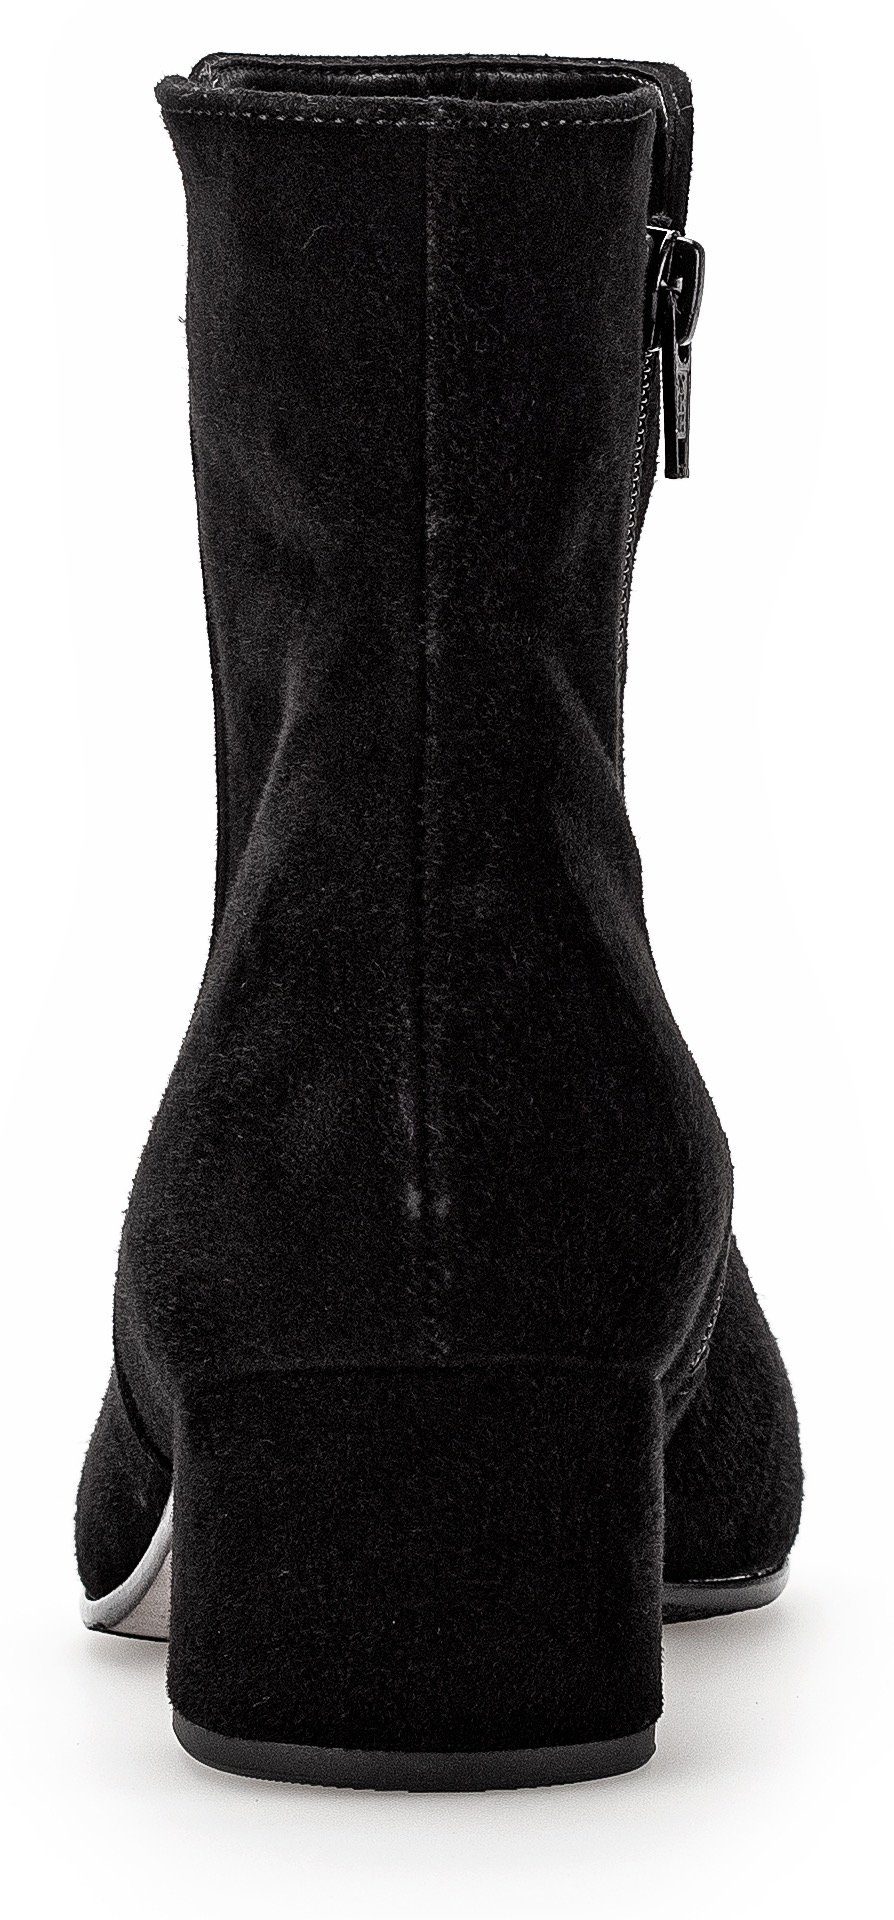 Best Stiefelette Fitting-Ausstattung schwarz mit Gabor